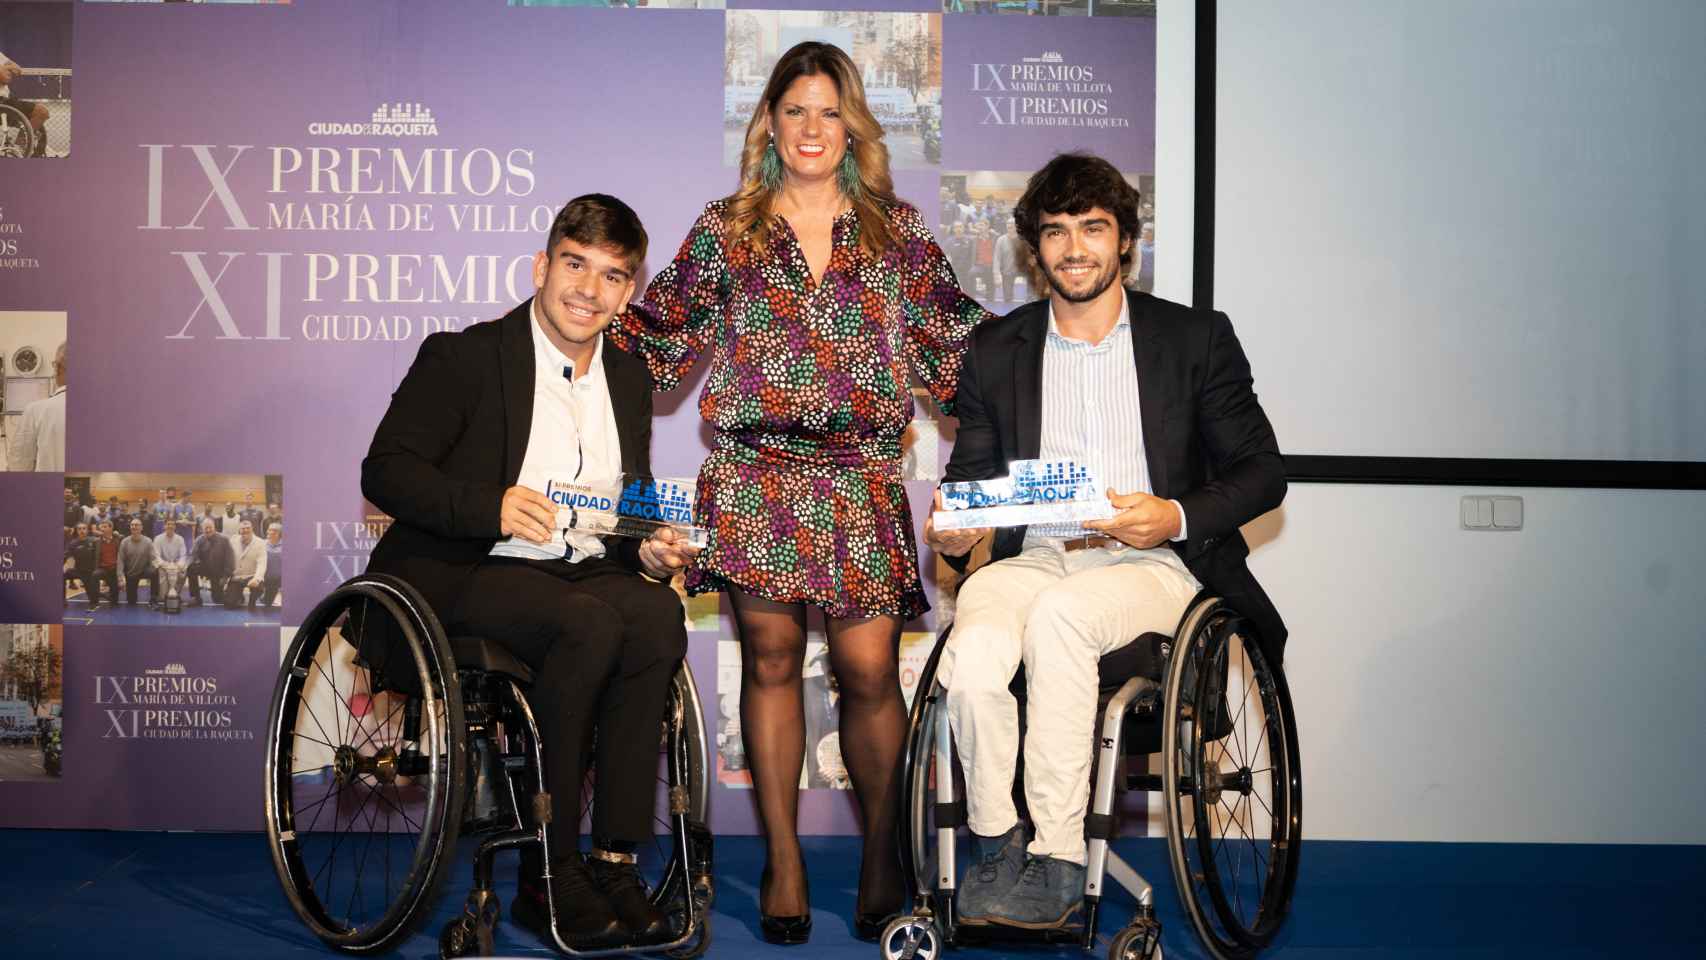 Martín de la Puente y Dani Caverzaschi, jugadores de tenis en silla de ruedas, y Alicia Martín Pérez, directora de general de deportes del Ayuntamiento de Madrid